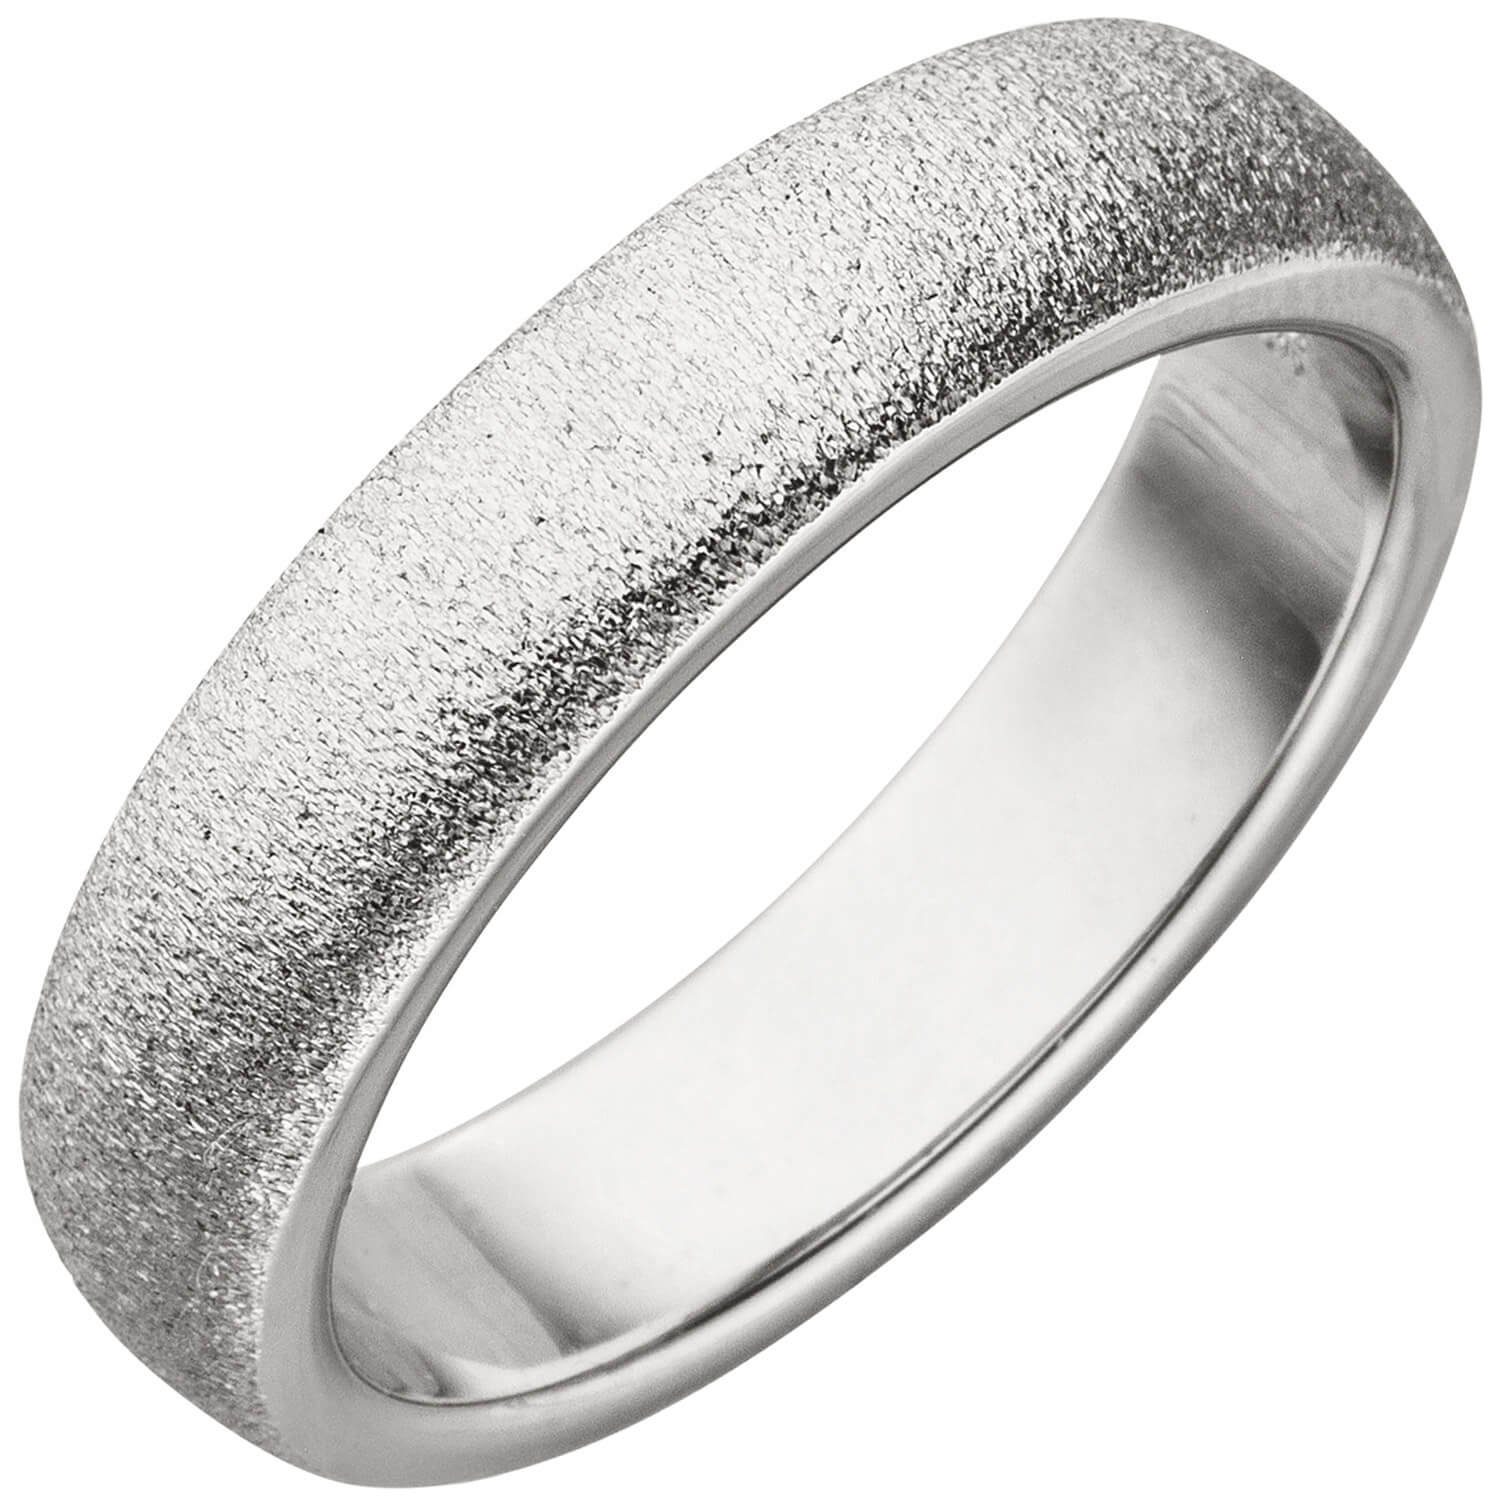 Schmuck Krone Silberring Ring Damenring 925 Silber mit Sternenstaub Struktur flach 5,5mm breit Fingerring, Silber 925